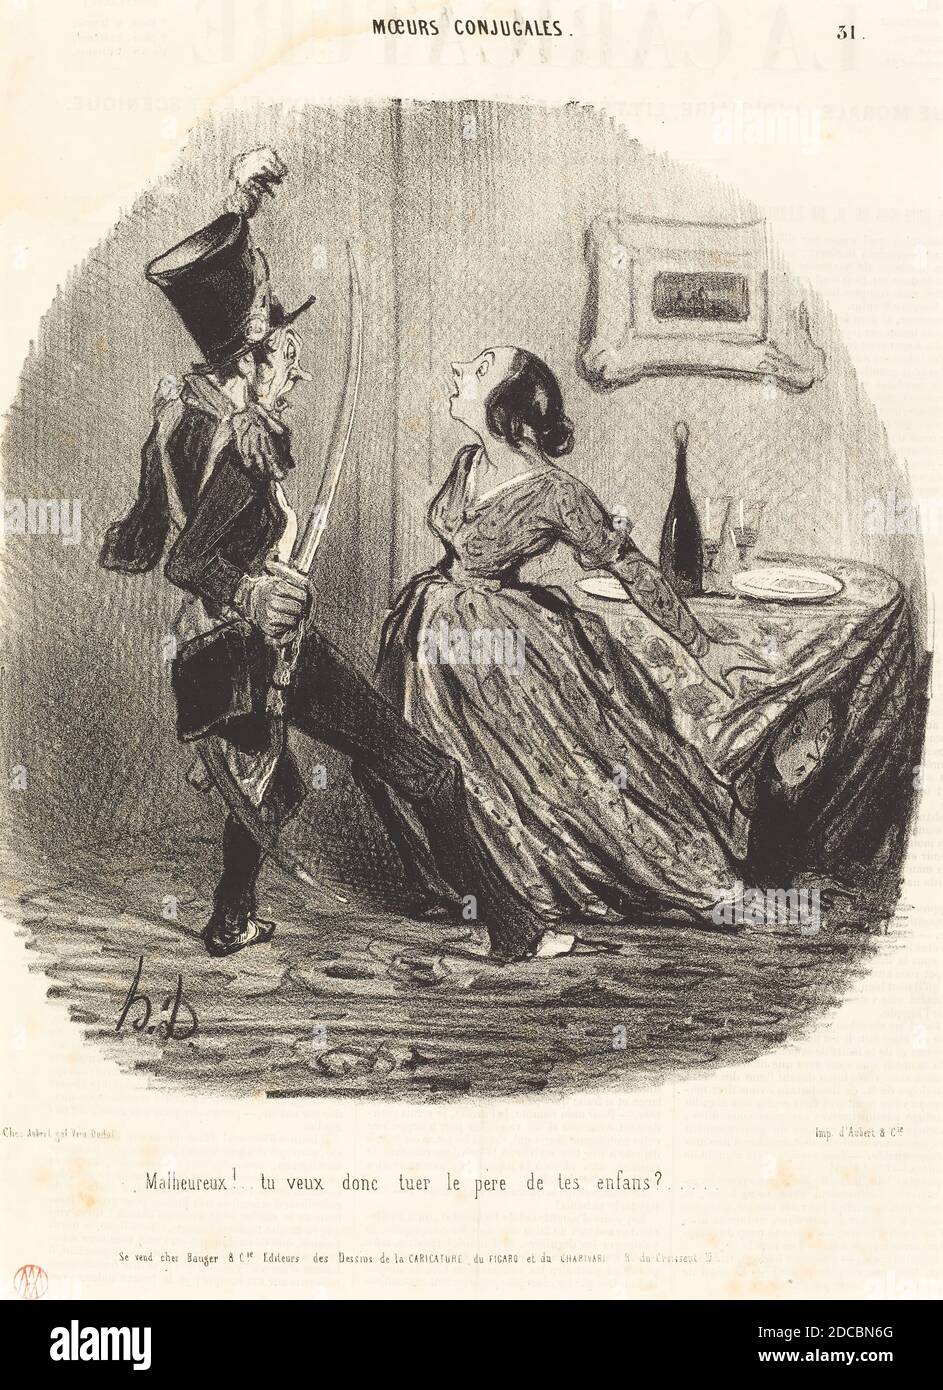 Honoré Daumier, (artist), French, 1808 - 1879, Malheureux! tu veux donc tuer le père de tes enfants?, Moeurs conjugales: pl.31, (series), 1841, lithograph on newsprint Stock Photo